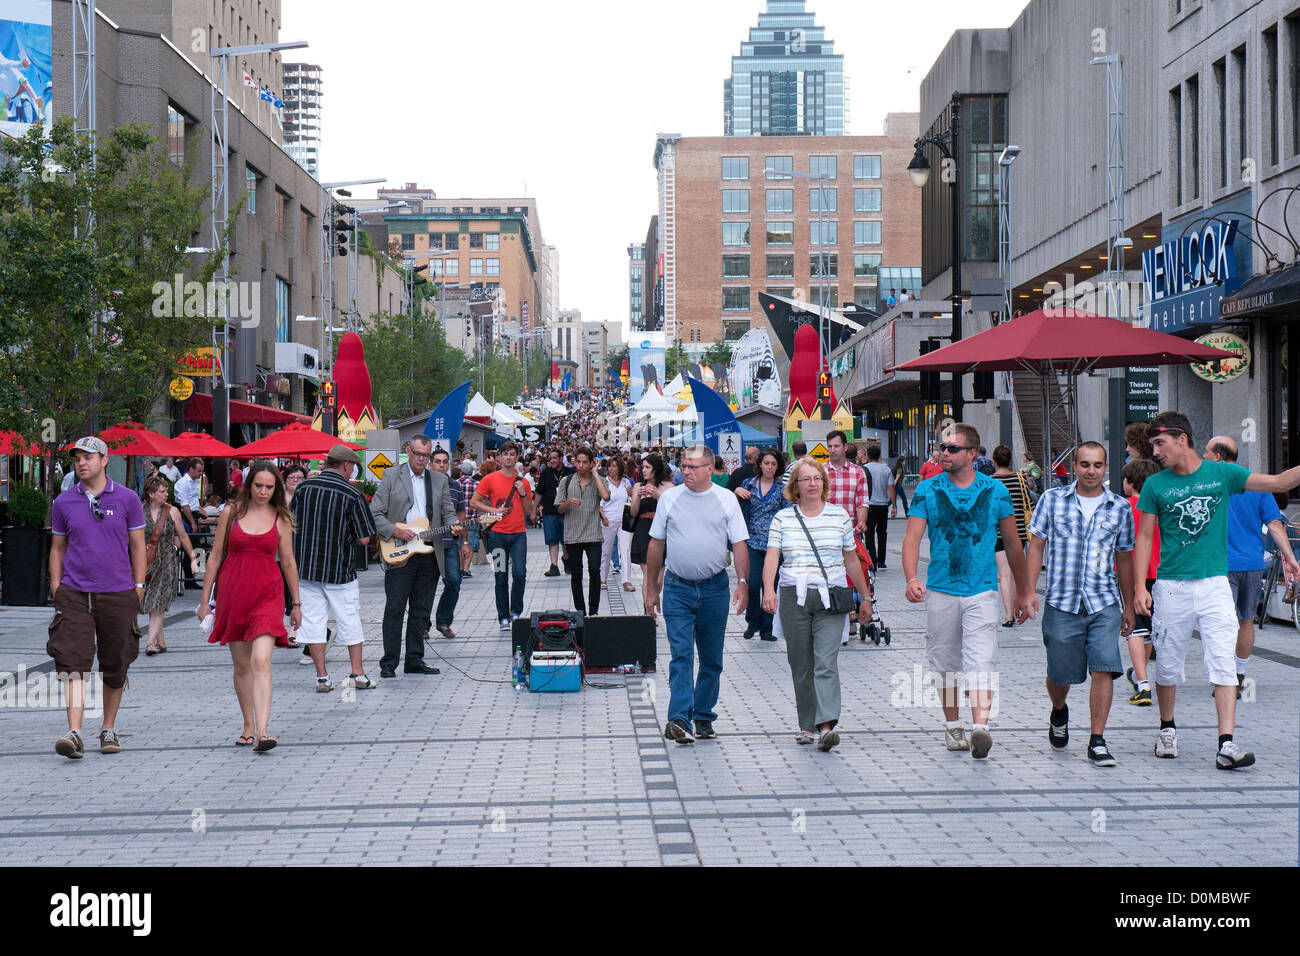 Pedoni su una parte Ste Catherine Street che è chiuso alle auto durante i mesi estivi.Montreal, Quebec, Canada. Foto Stock